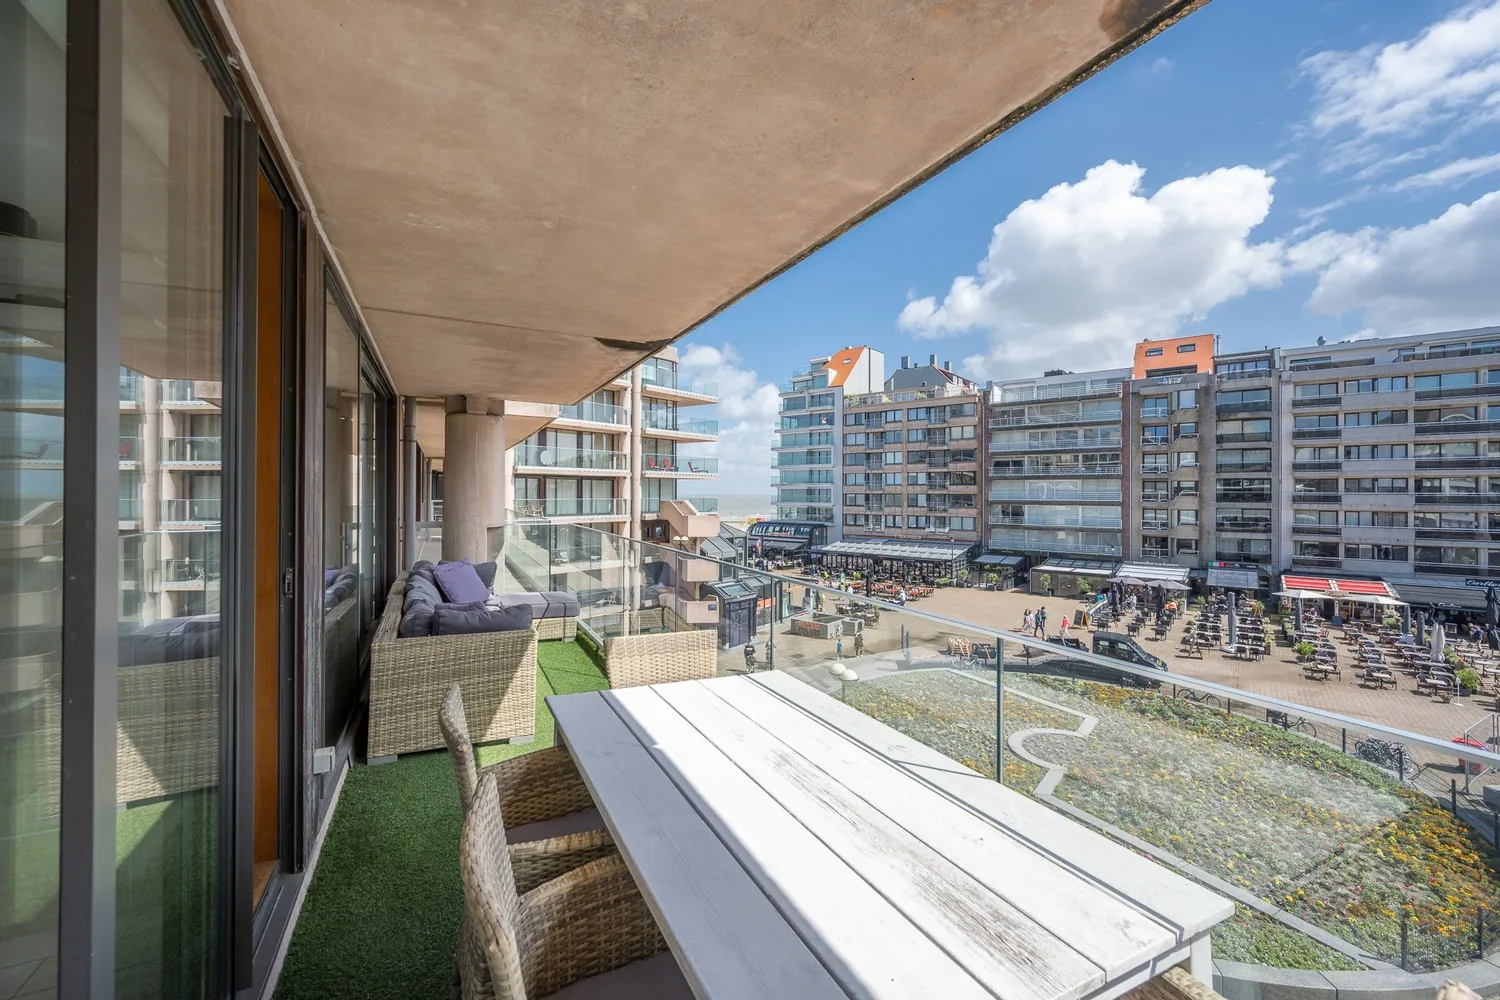 Appartement 3 chambres à coucher avec des belles terrasses, VUE MER et vue ouverte sur la place Van Bunnen. Garage possible dans le bâtiment.